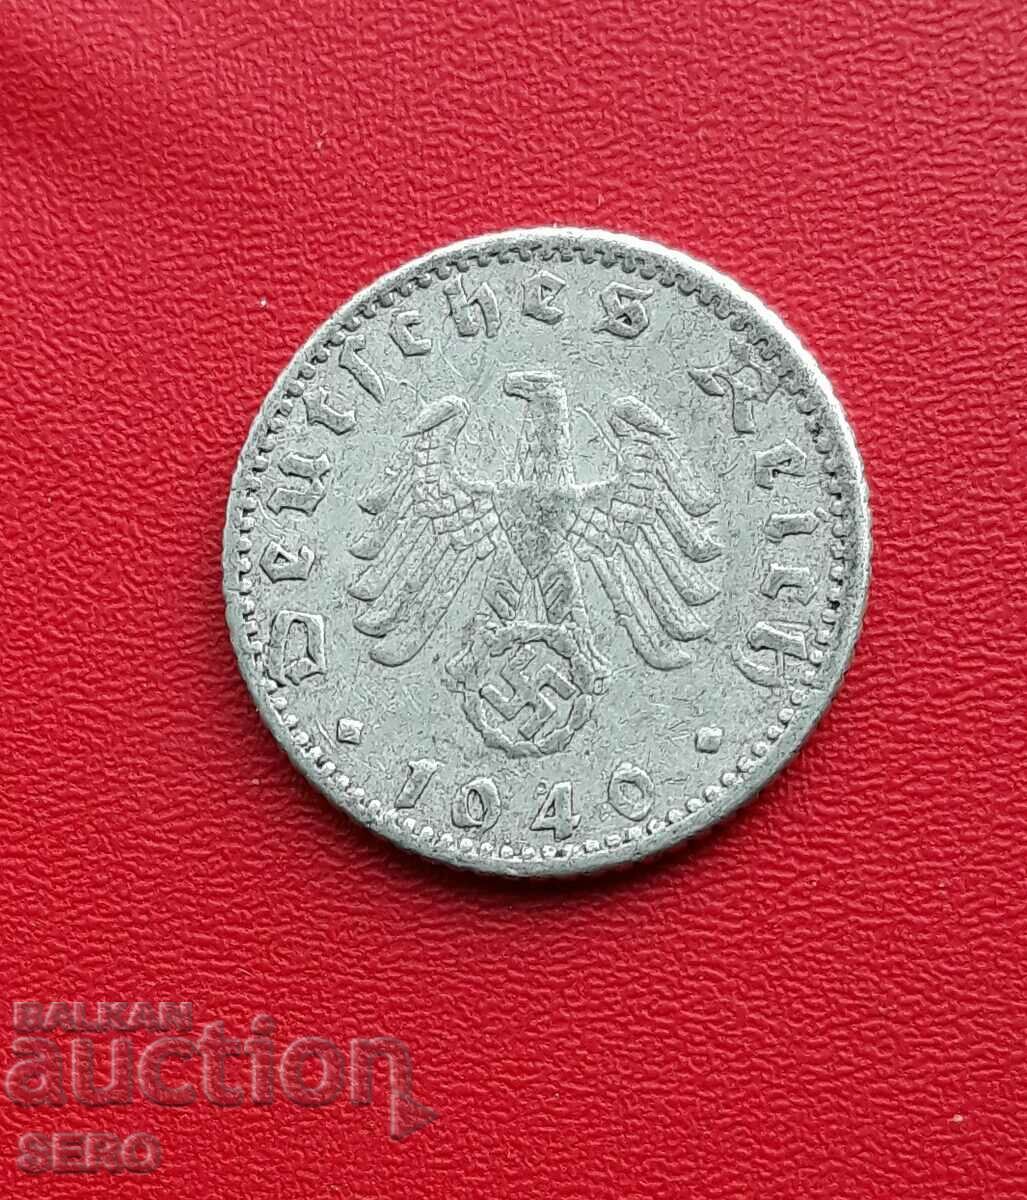 Germany- III Reich-50 Pfennig 1940 A-Berlin